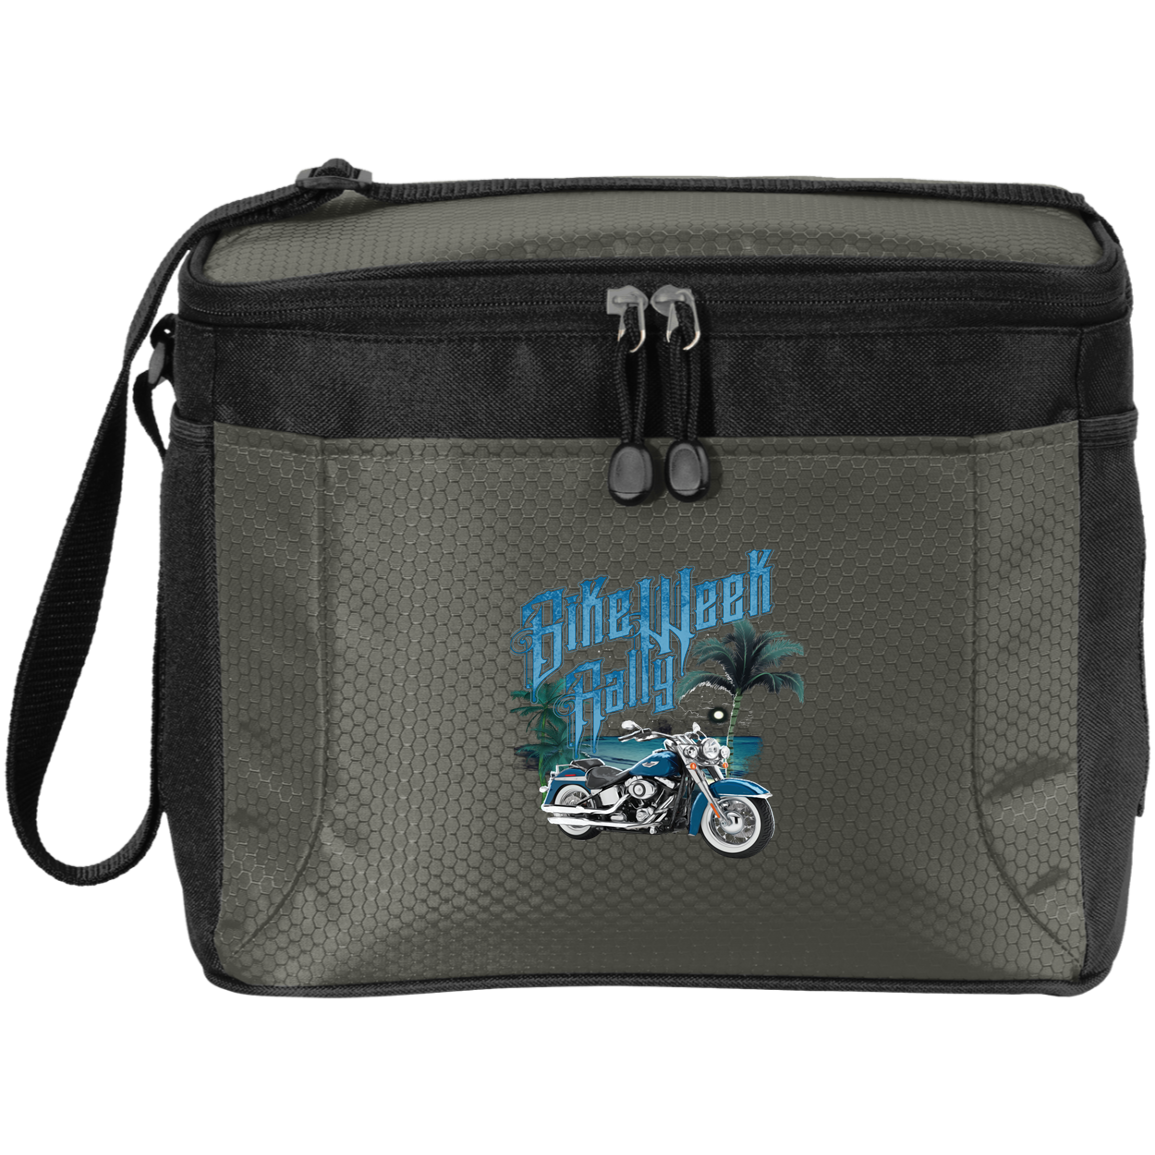 Bike Week Rally 12-Pack Cooler Bag - American Legend Rider